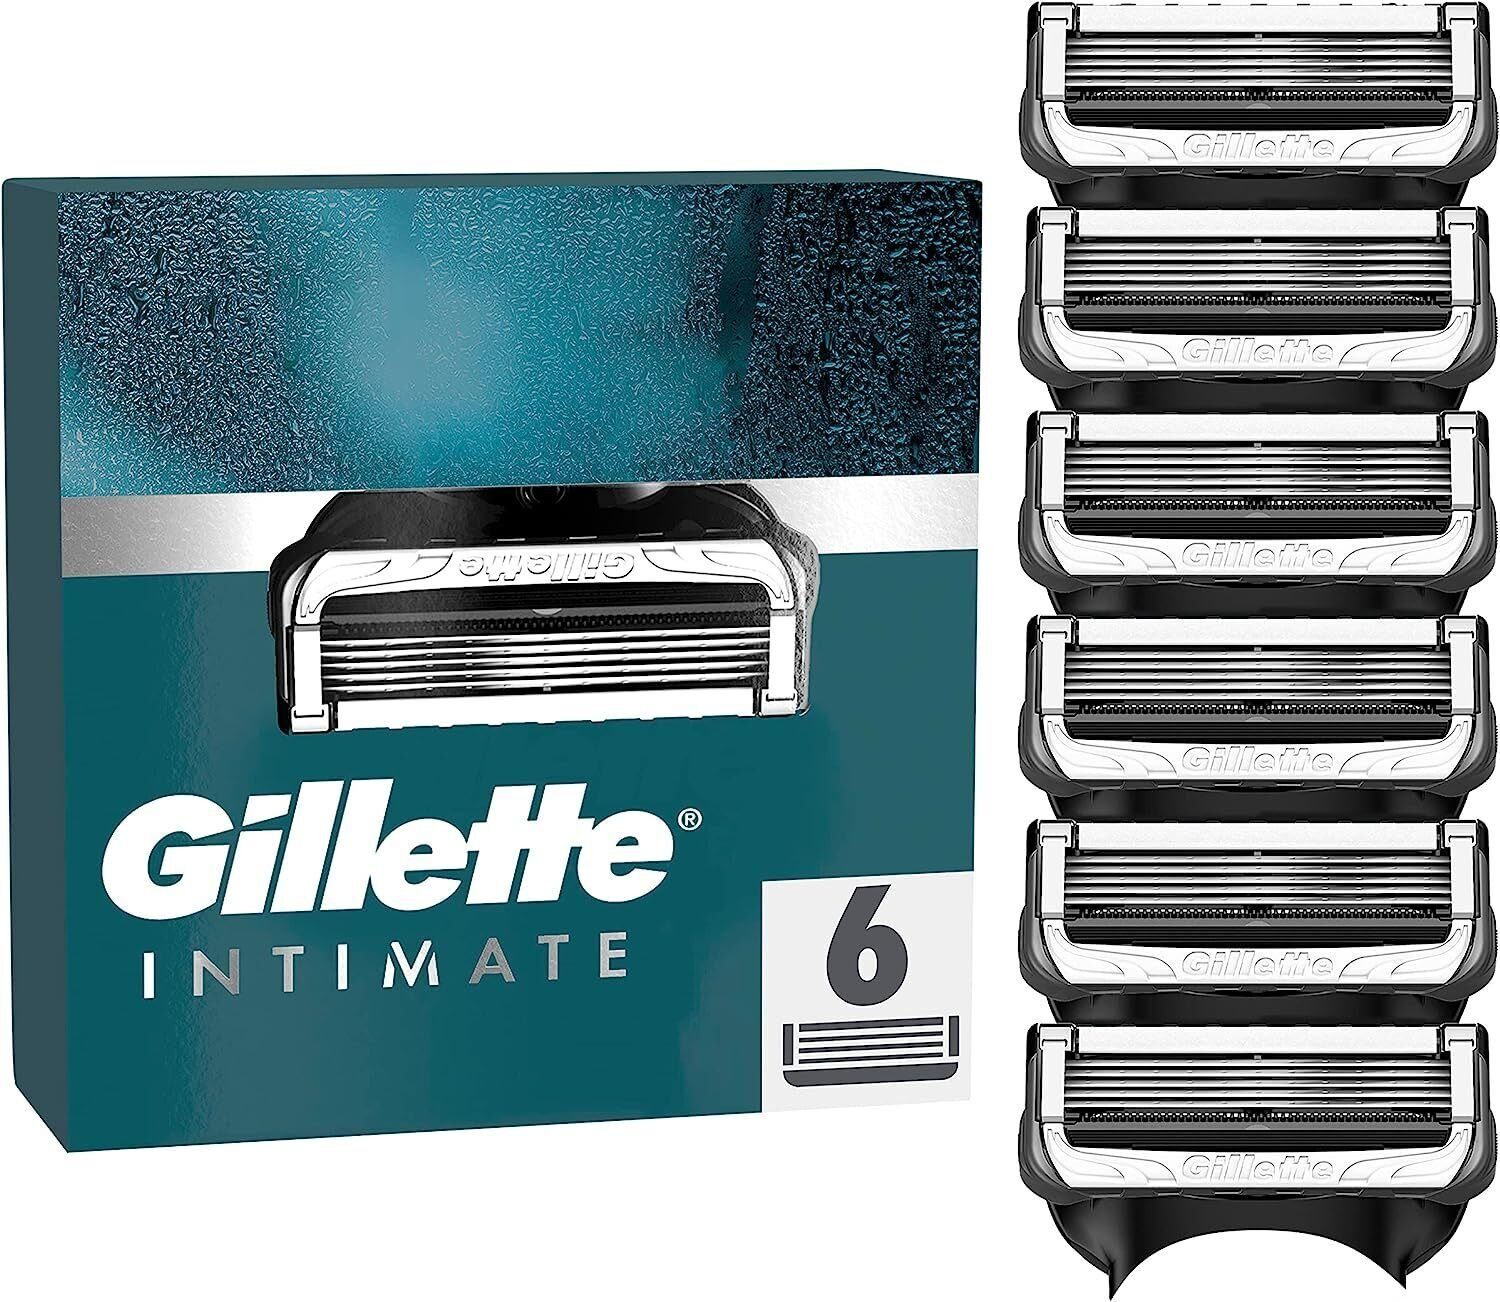 Gillette Rasierklingen Intimate, 6-tlg., Spar-Set - 4, 6, 8, 12, 20 x Klingen, sanft zur empfindlichen Intimhaut, Made in Germany